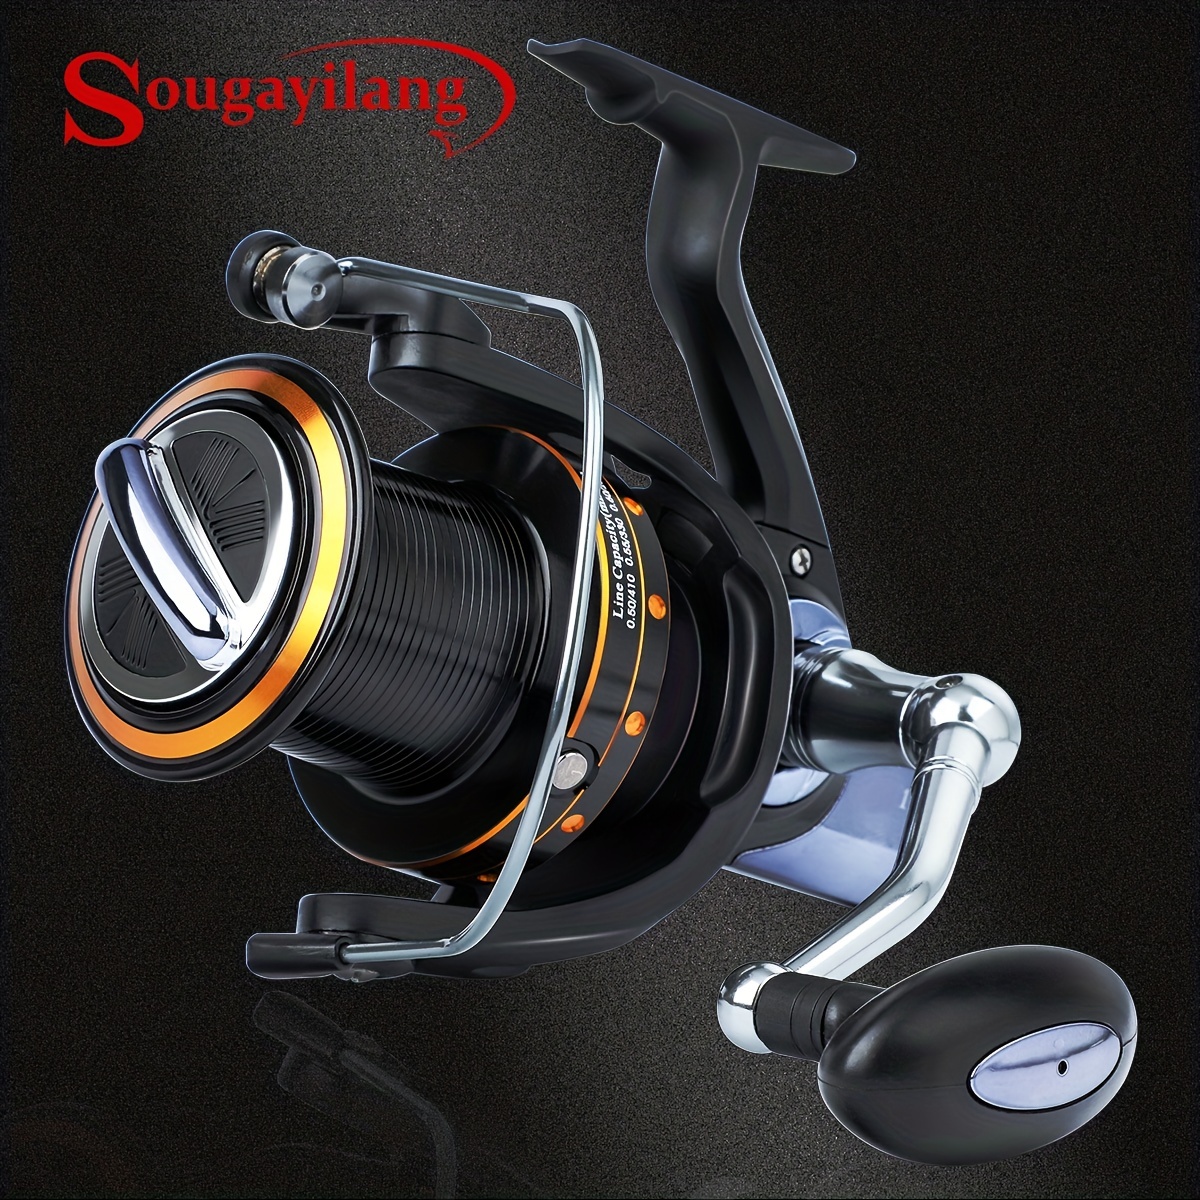 Sougayilang [ Advanced Angler] Super Strong Spinning Fishing - Temu Canada